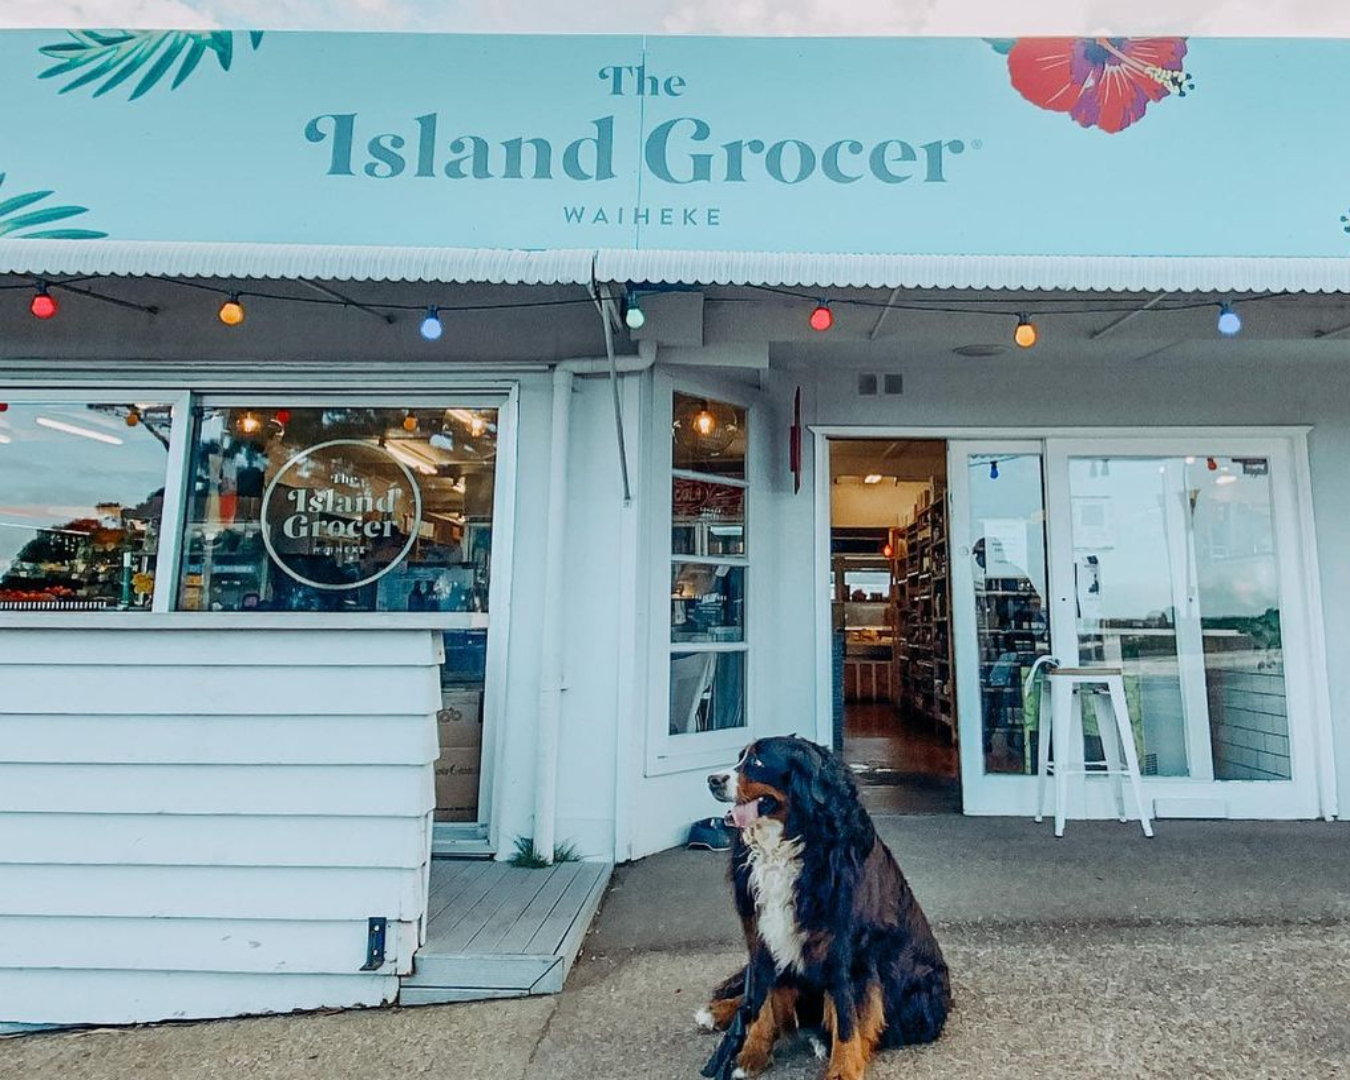 Dog sitting outside The Island Grocer on Waiheke Island